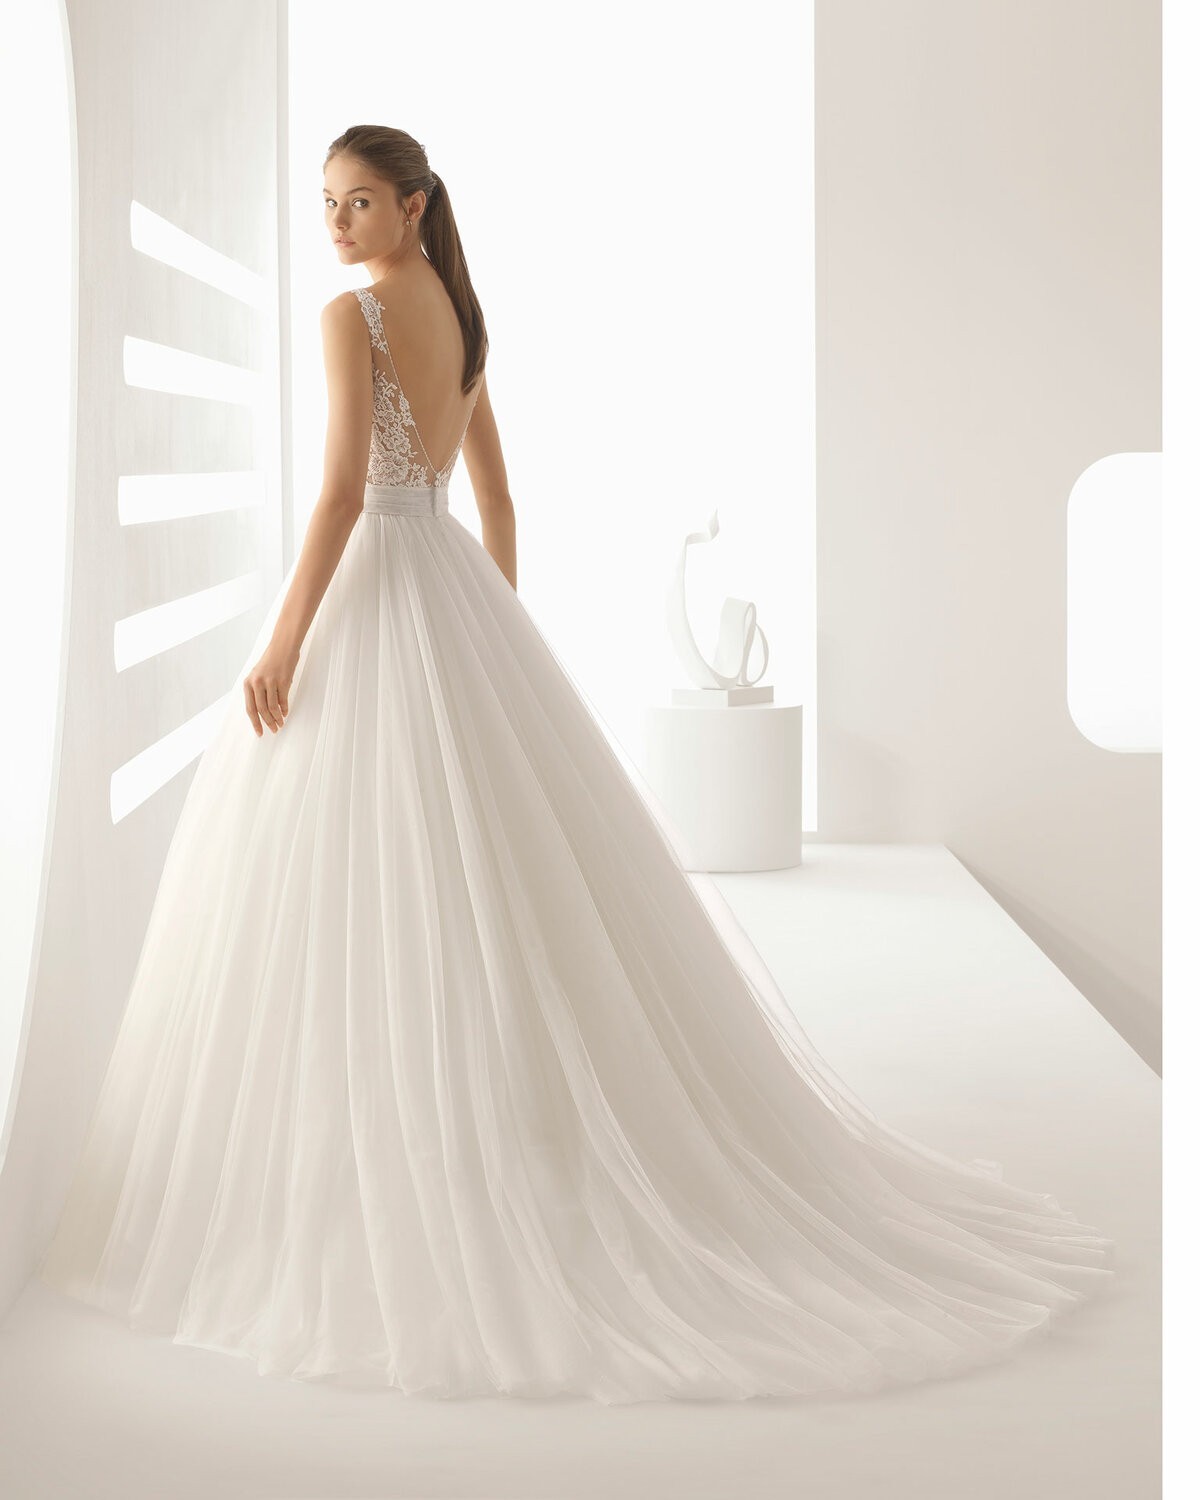 ALEJO - abito da sposa collezione 2020 - Rosa Clarà